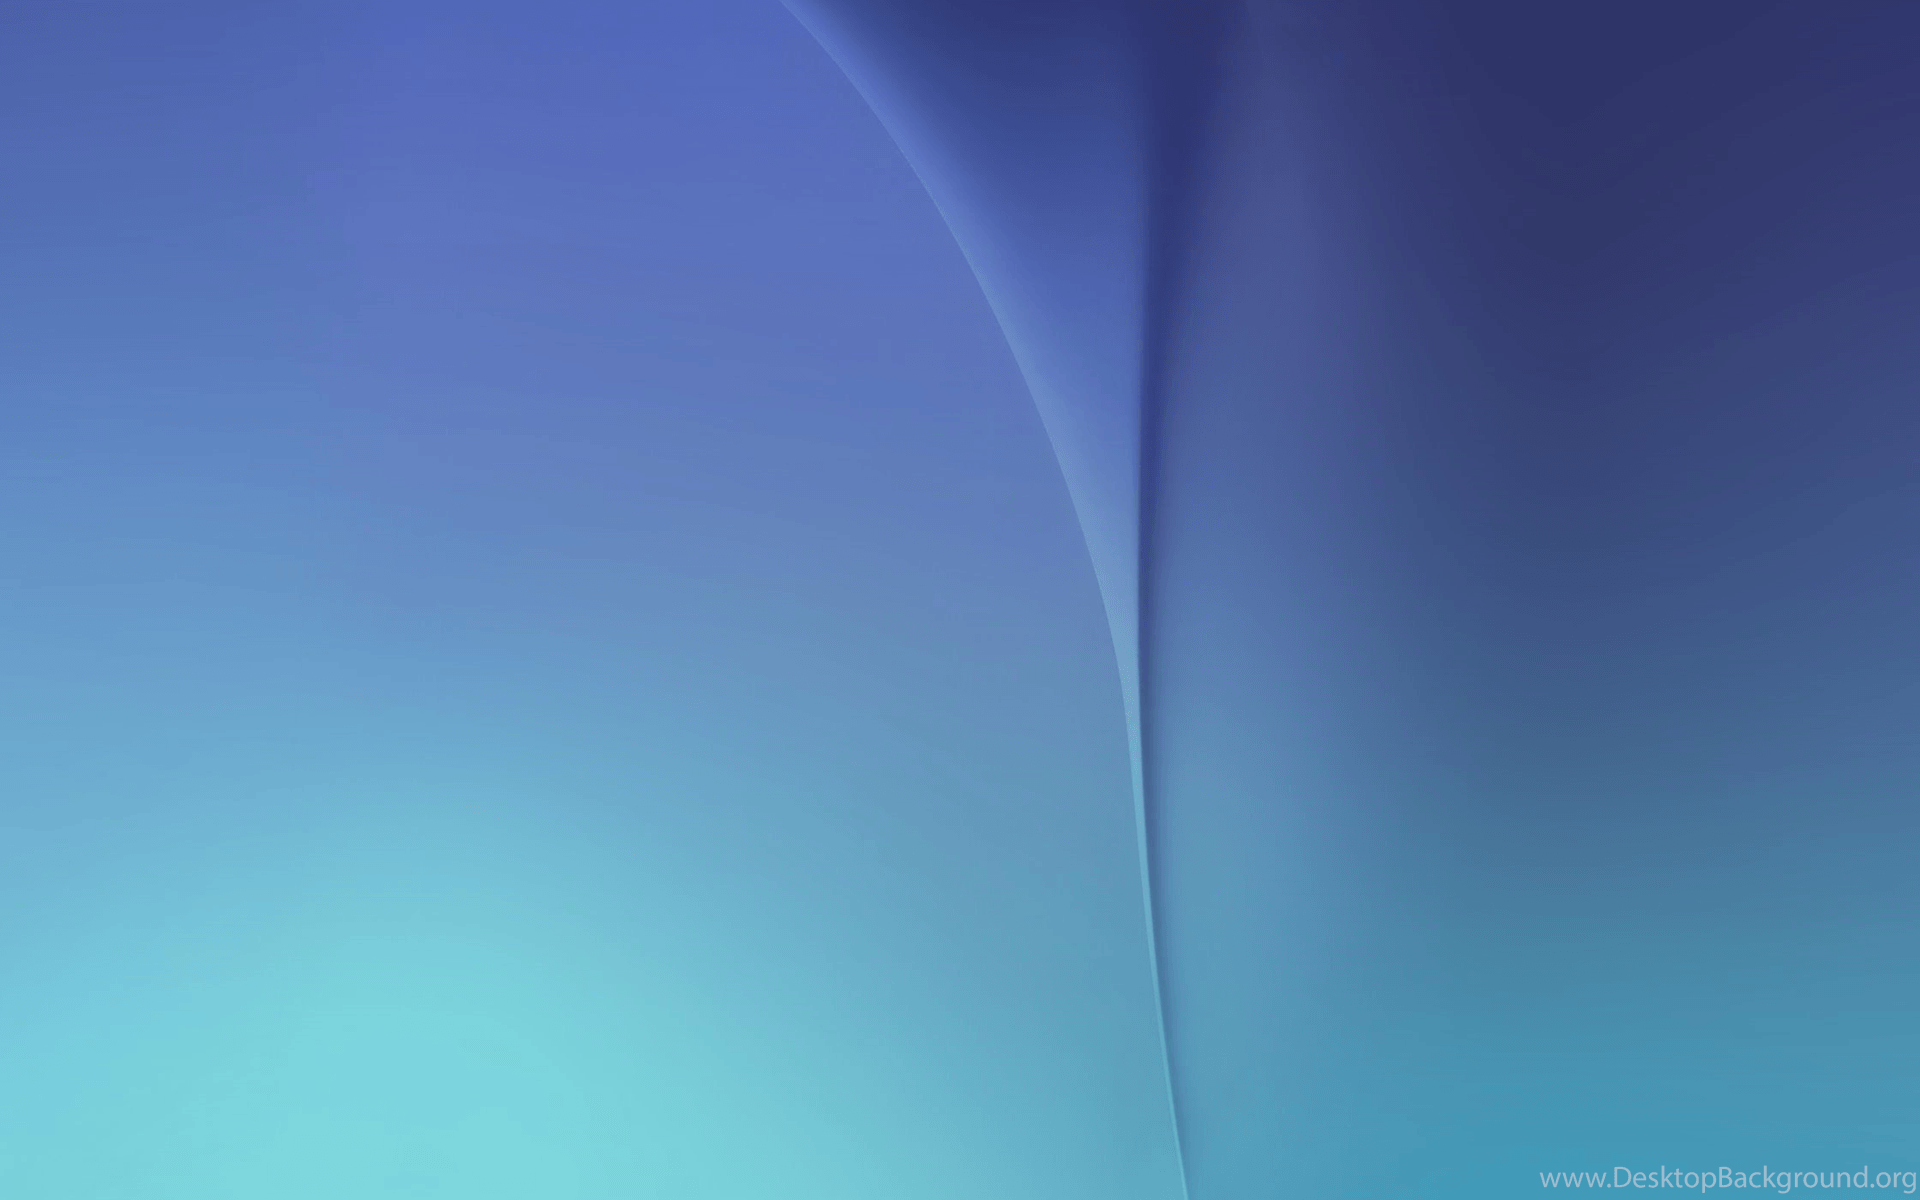 Samsung Galaxy A8 Stock Wallpaper 6.png Desktop Background